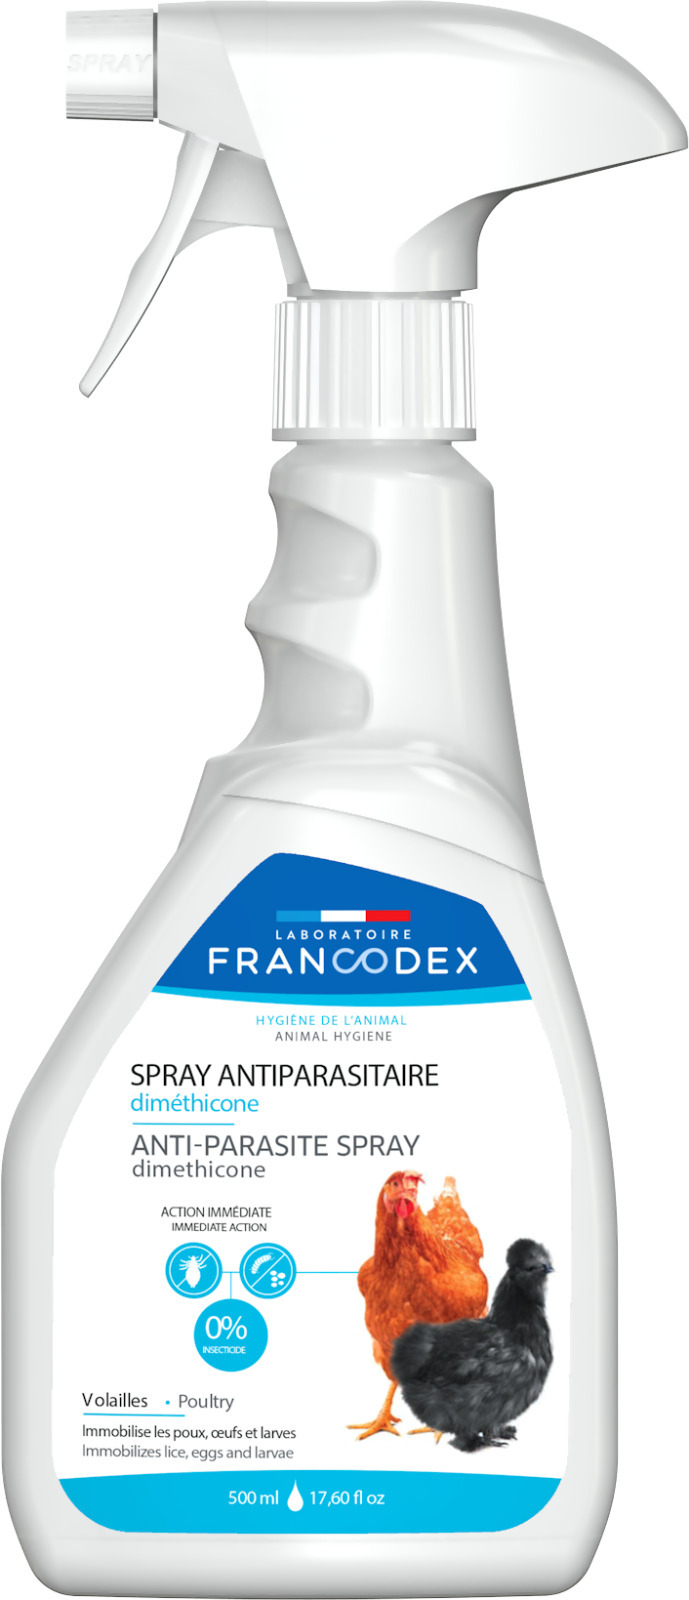 FRANCODEX Dimethicone Schädlingsbekämpfungsspray für Geflügel